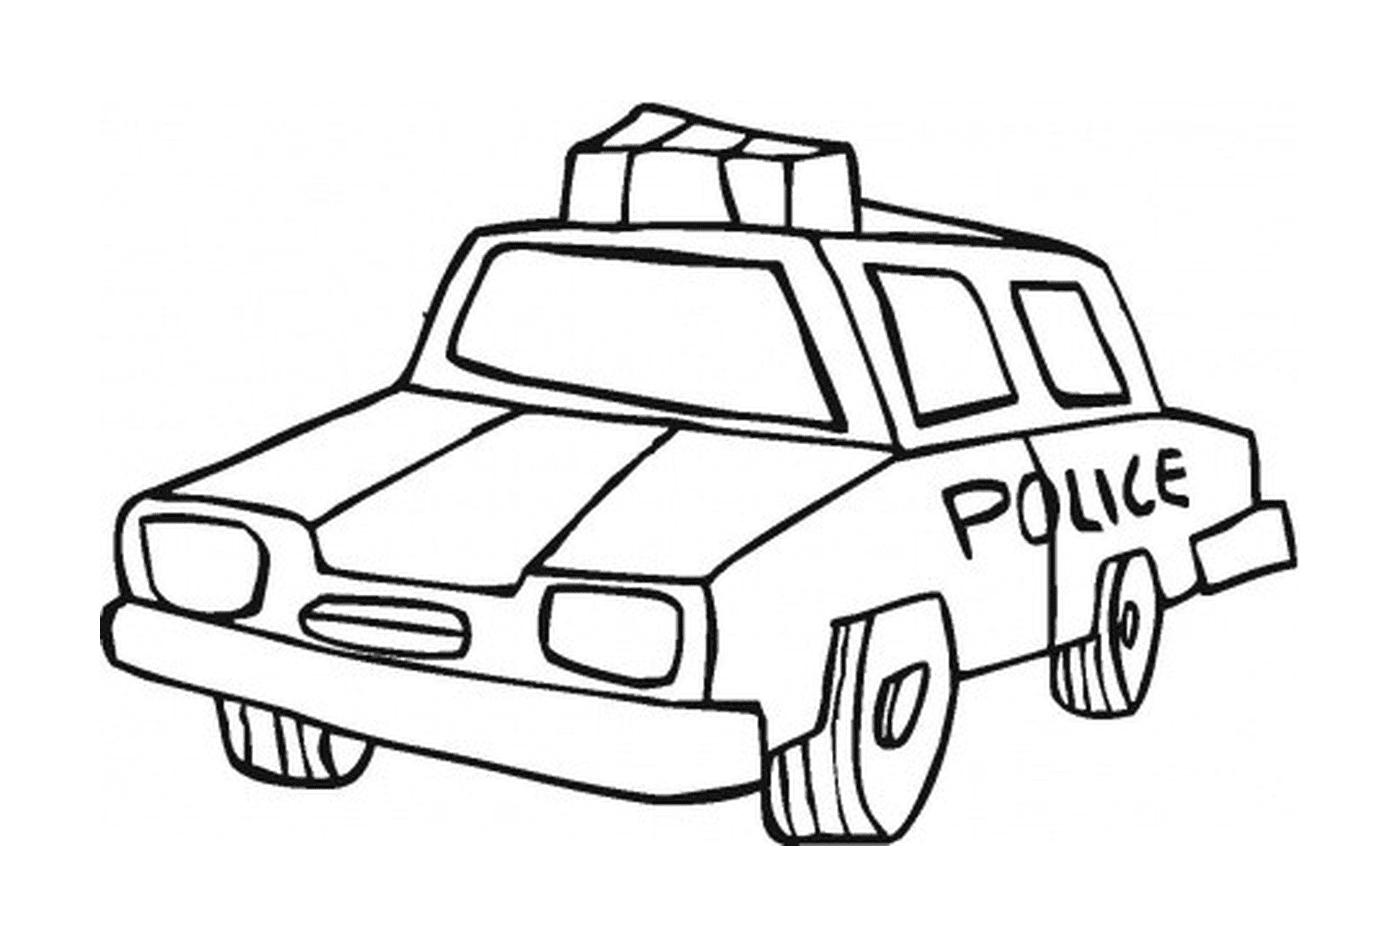  White police car 